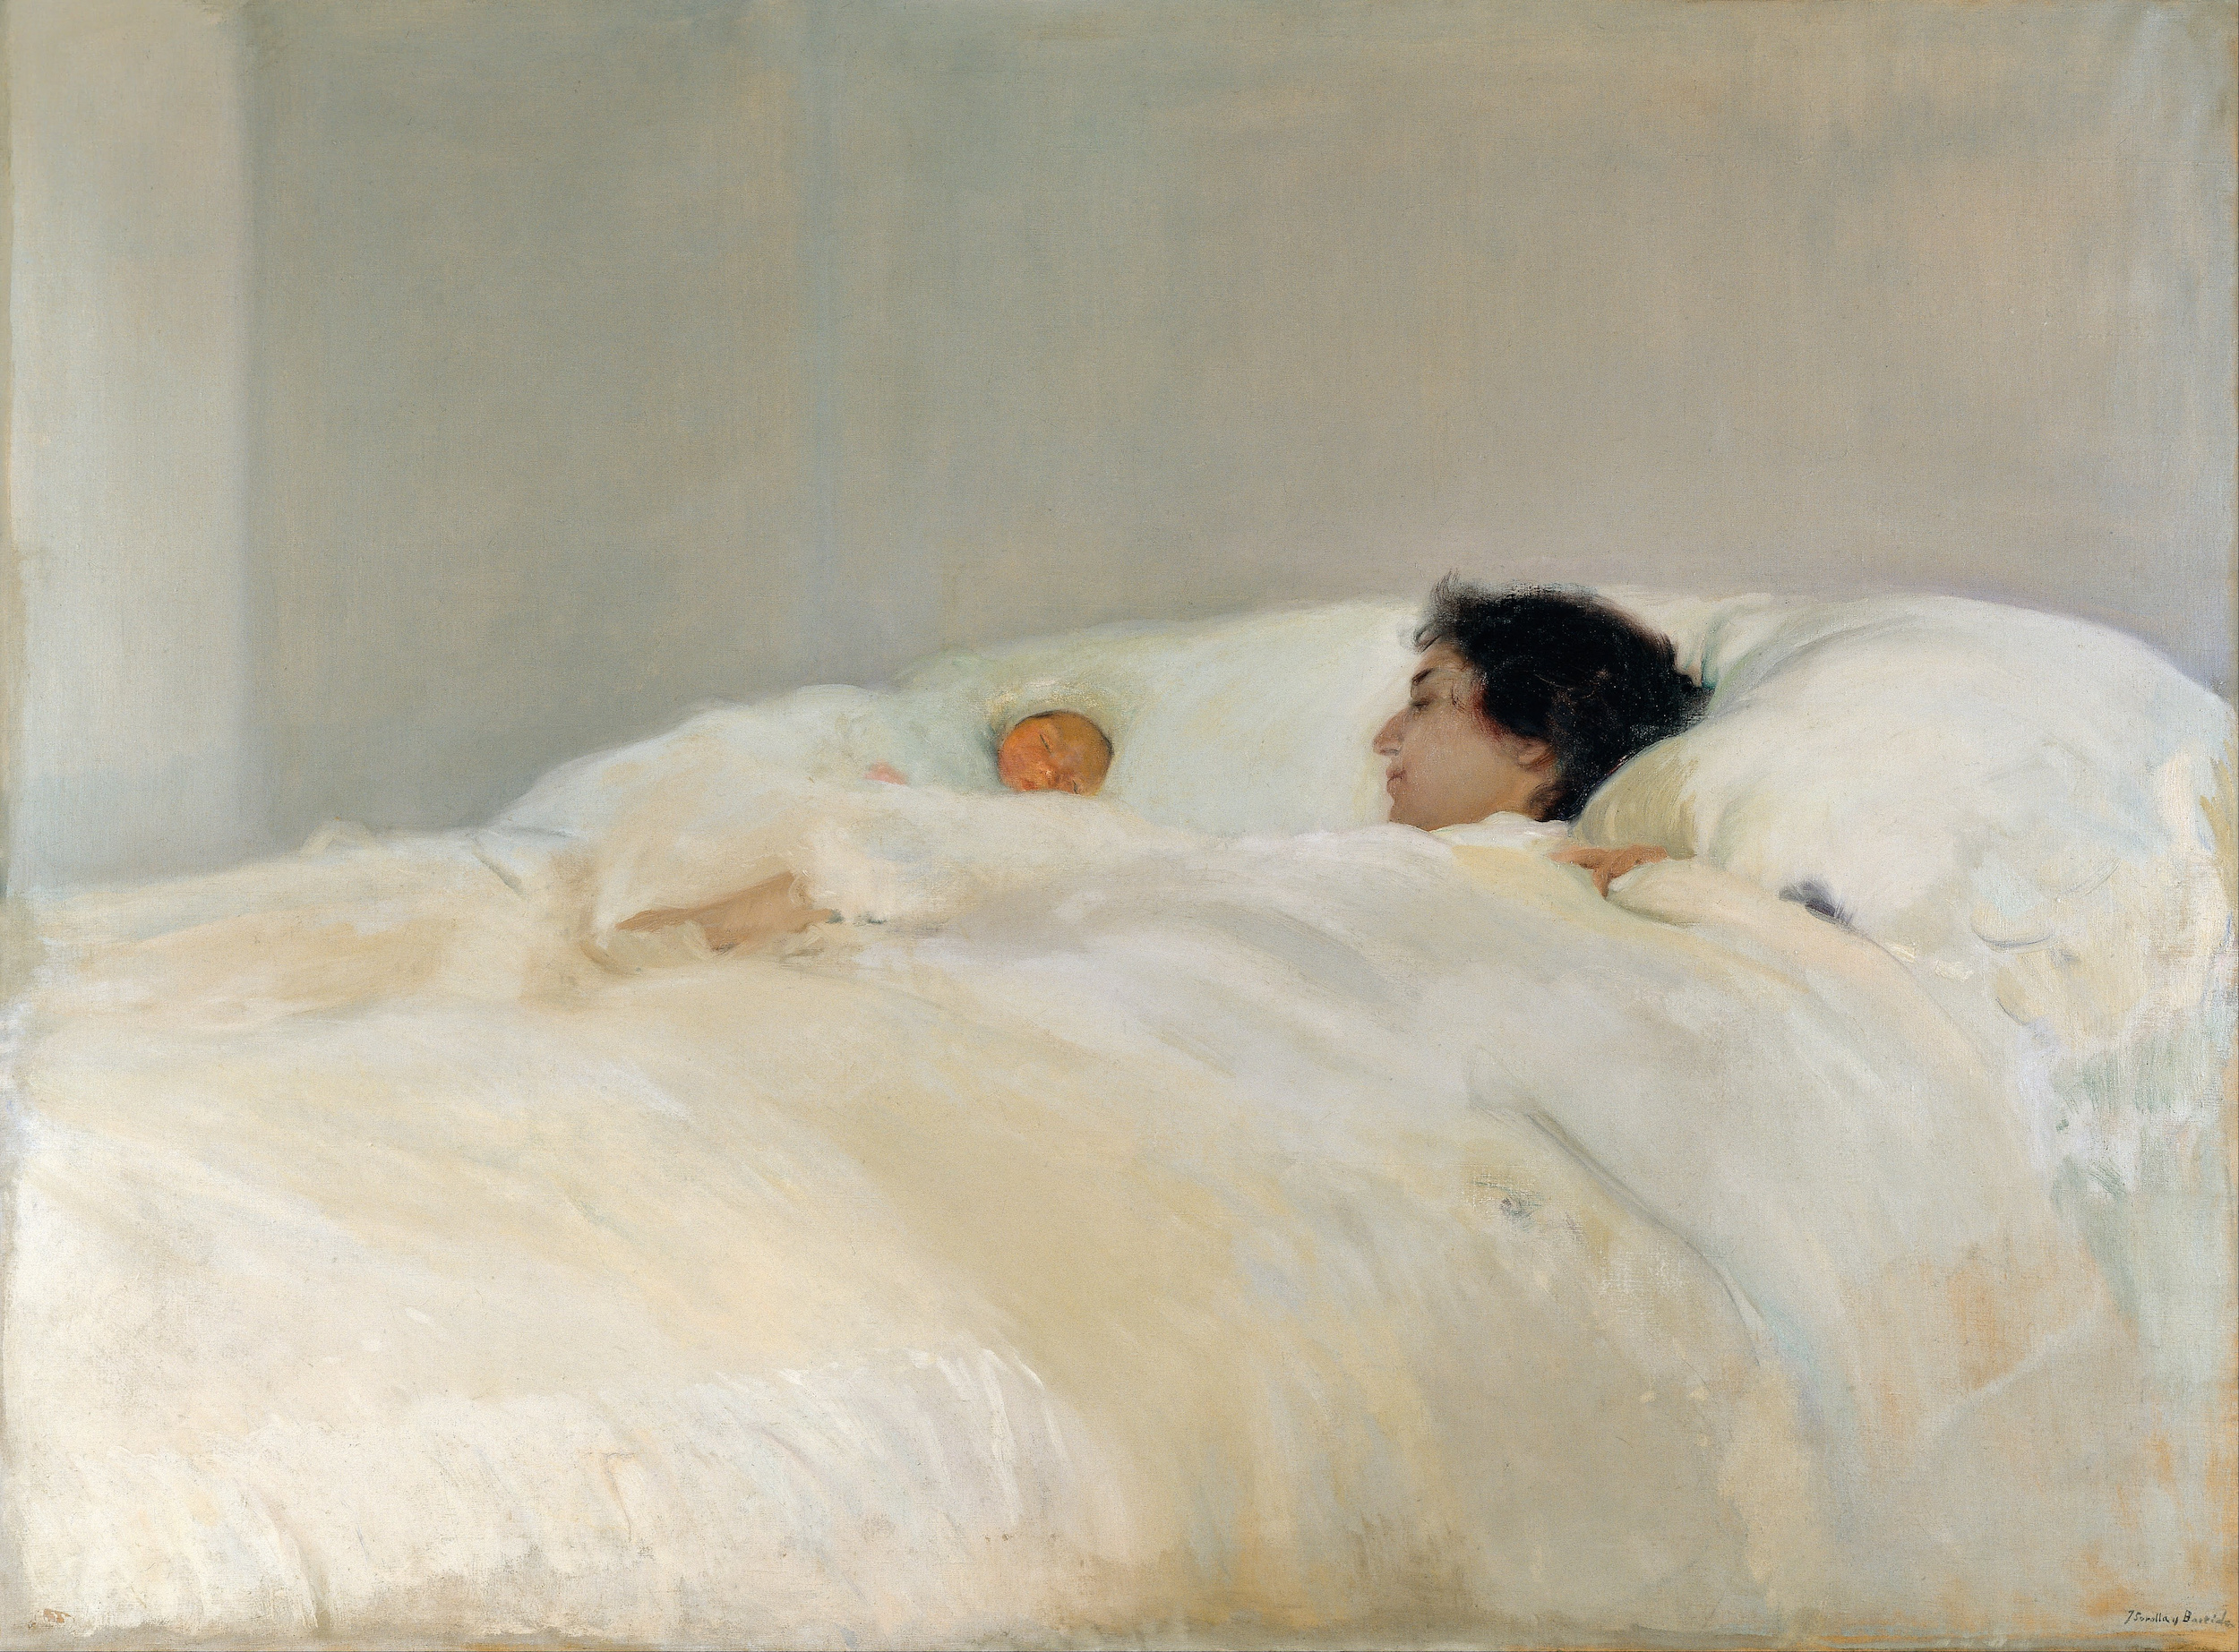 Matka by Joaquín Sorolla - 1895 - 125 x 169 cm 